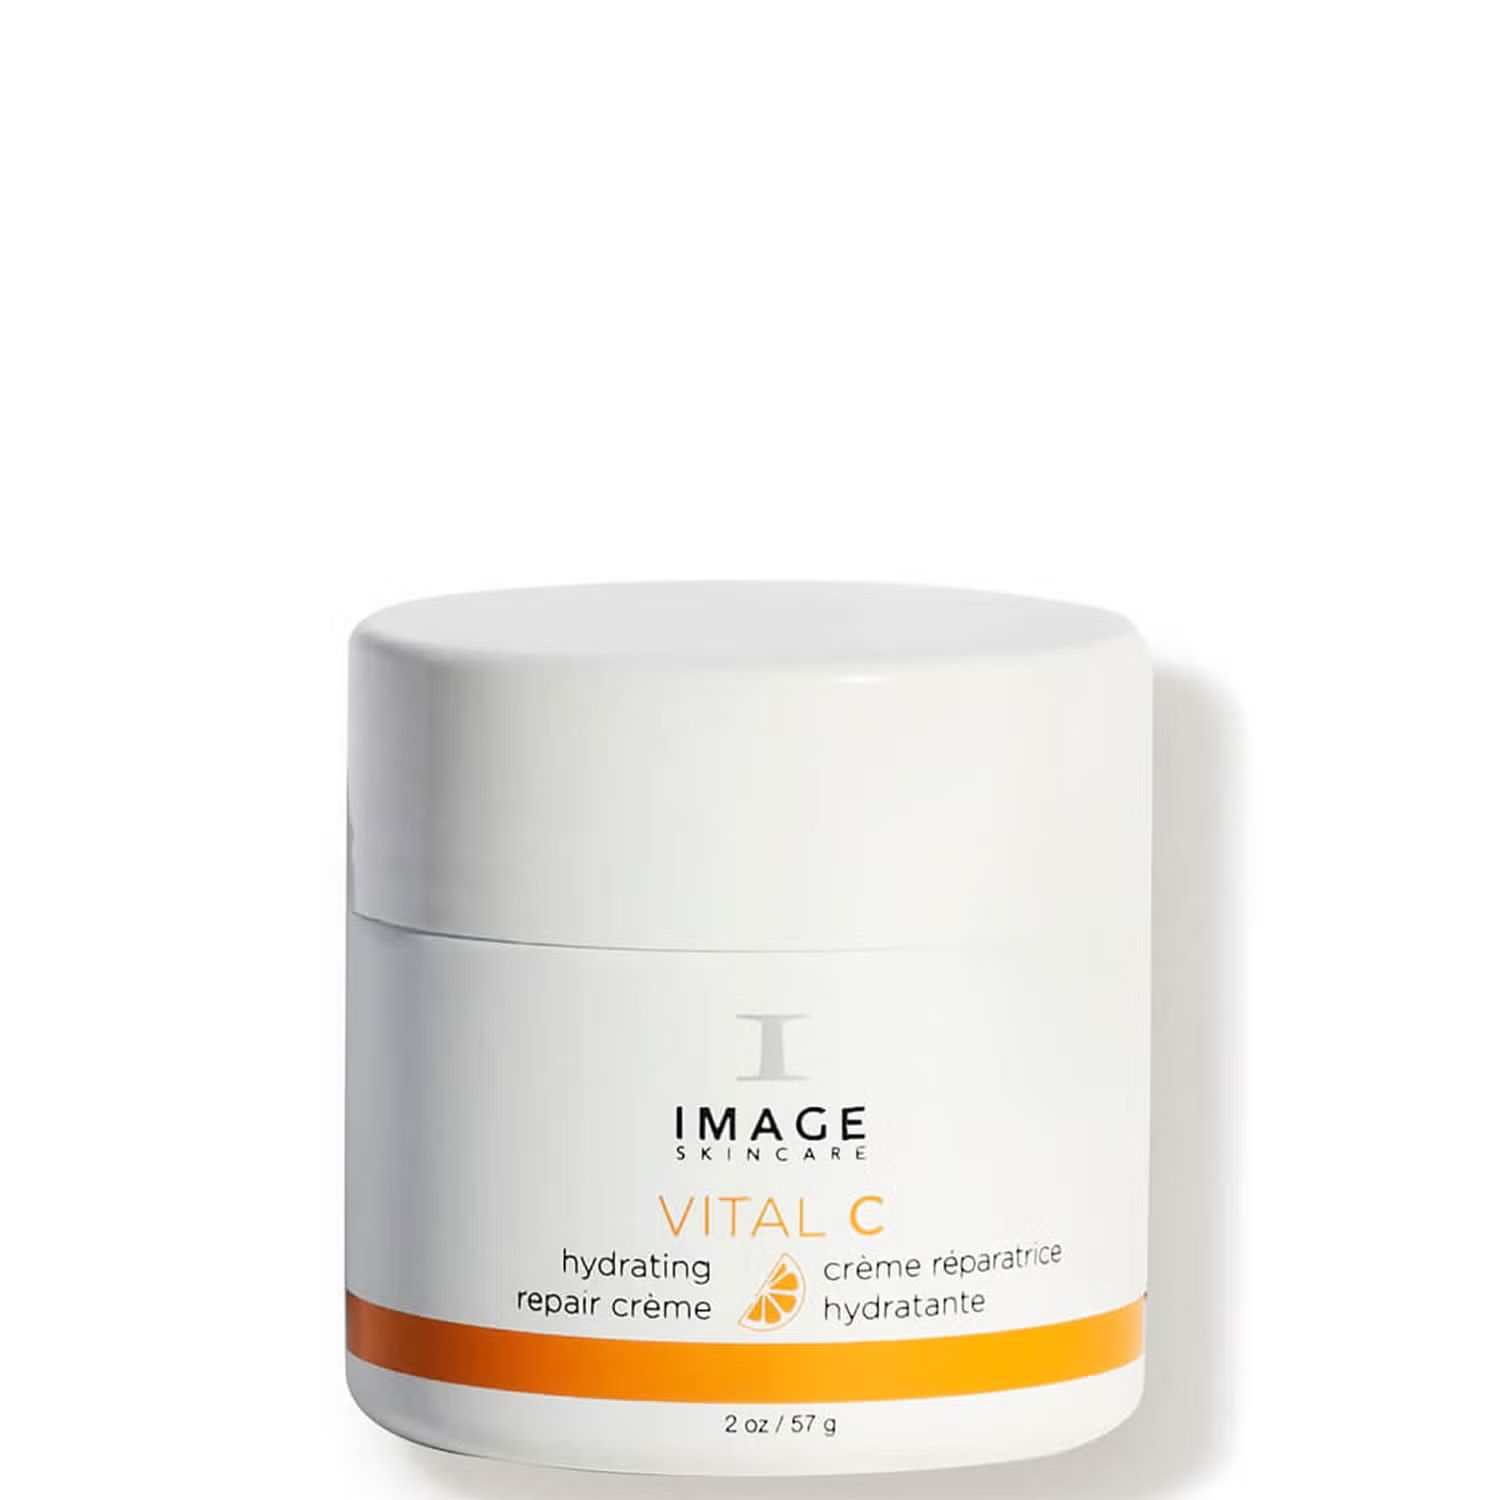 IMAGE Skincare VITAL C Hydrating Repair Creme (2 oz.) | Dermstore (US)